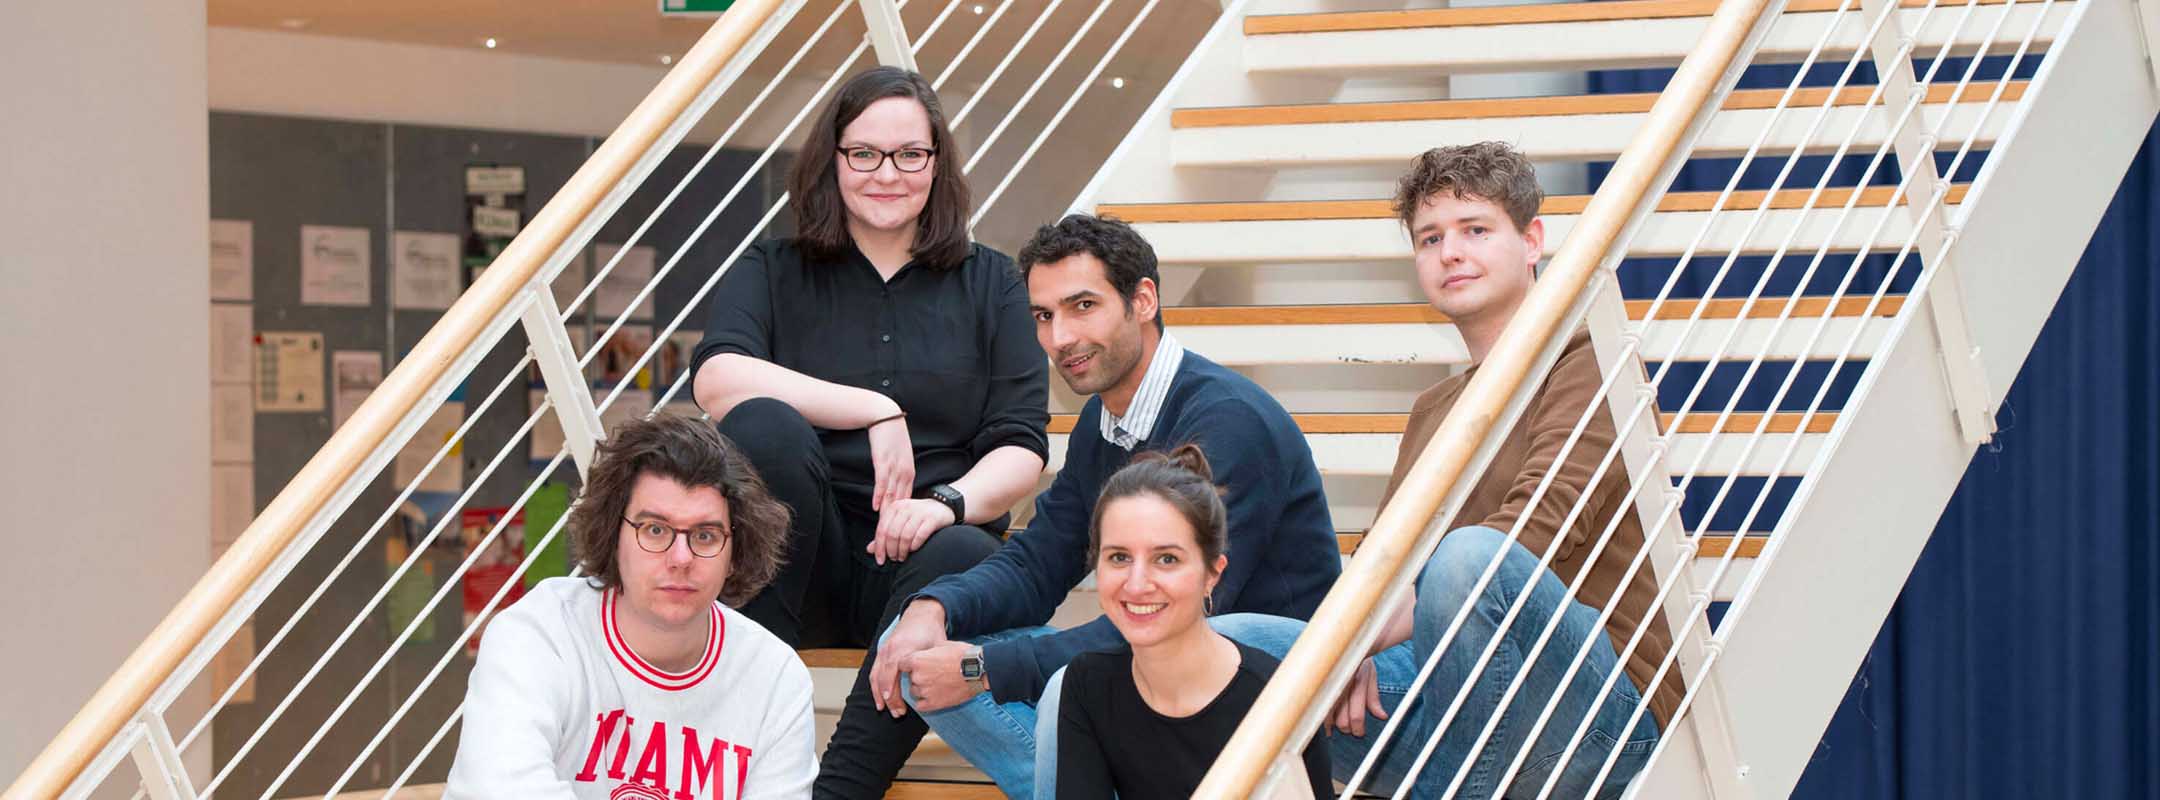 Das Team des Übergabe Podcasts sitzt auf einer Treppe